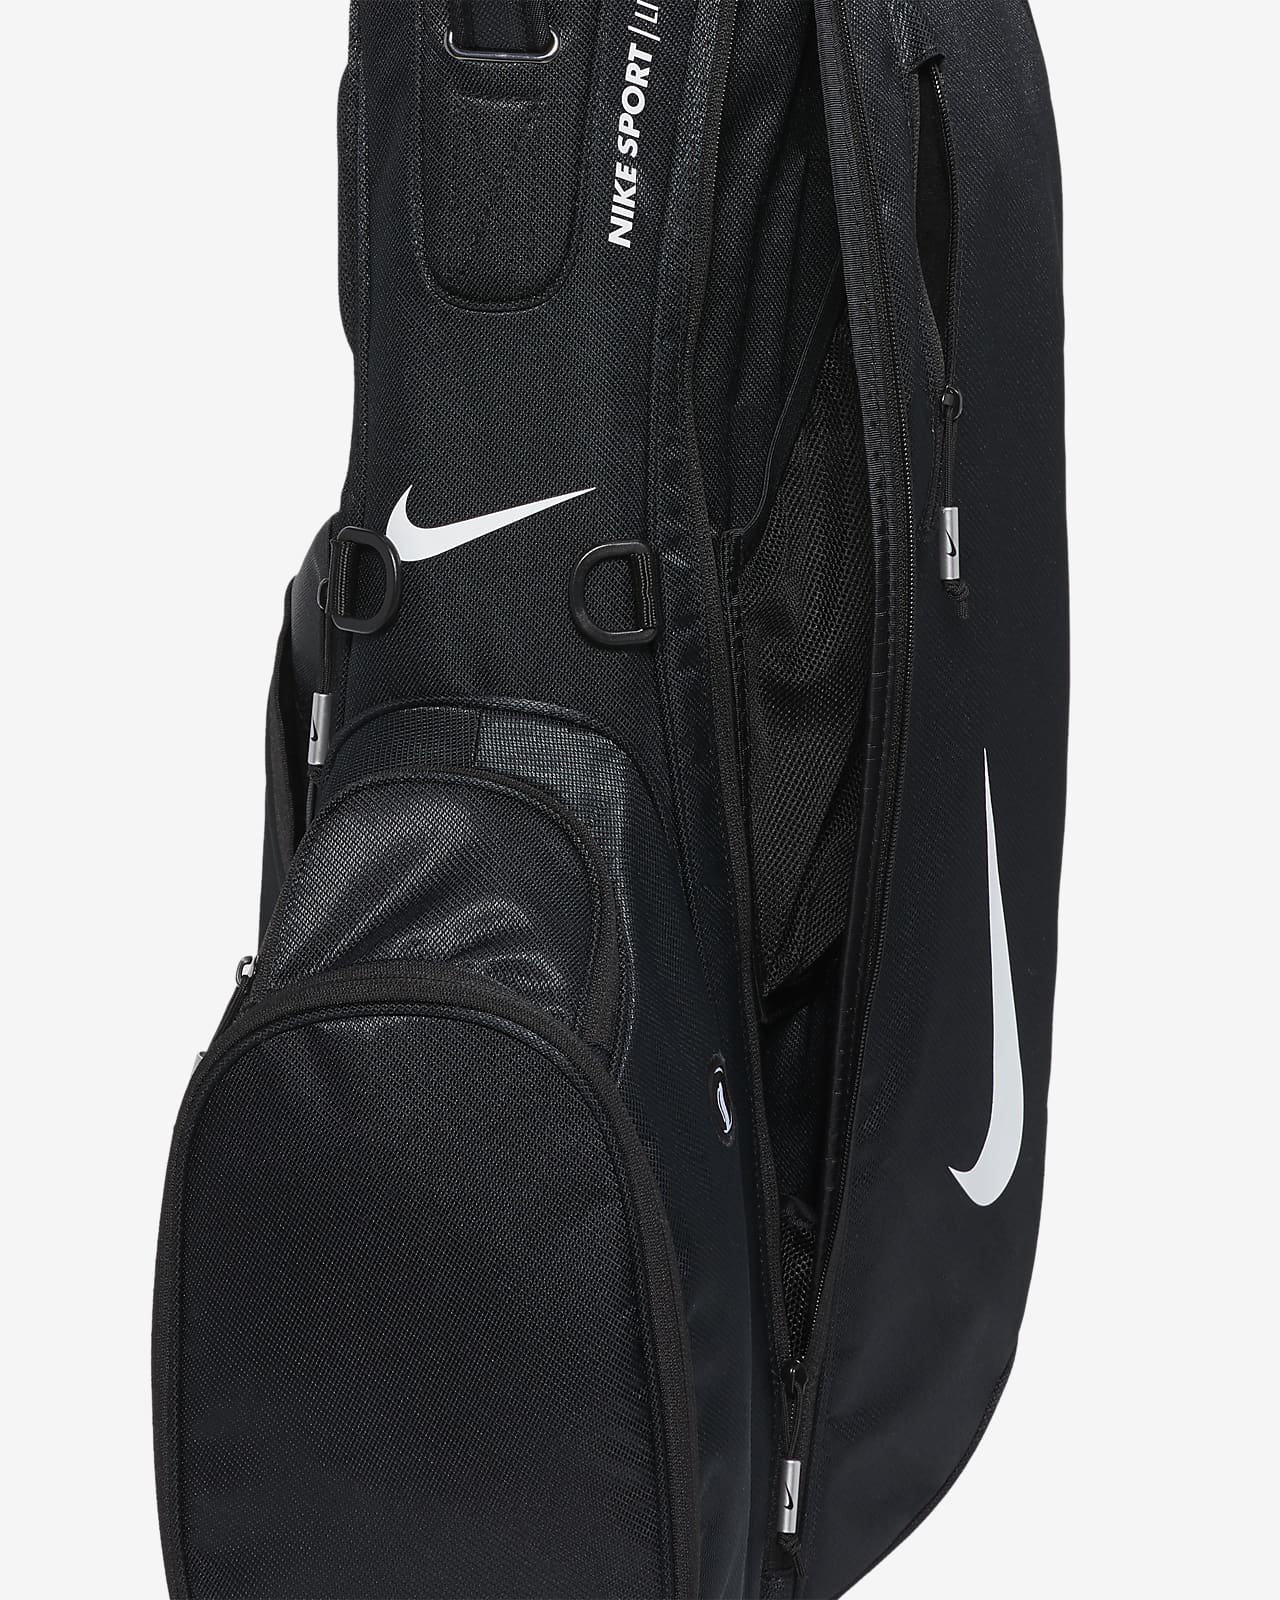 nike golf backpack